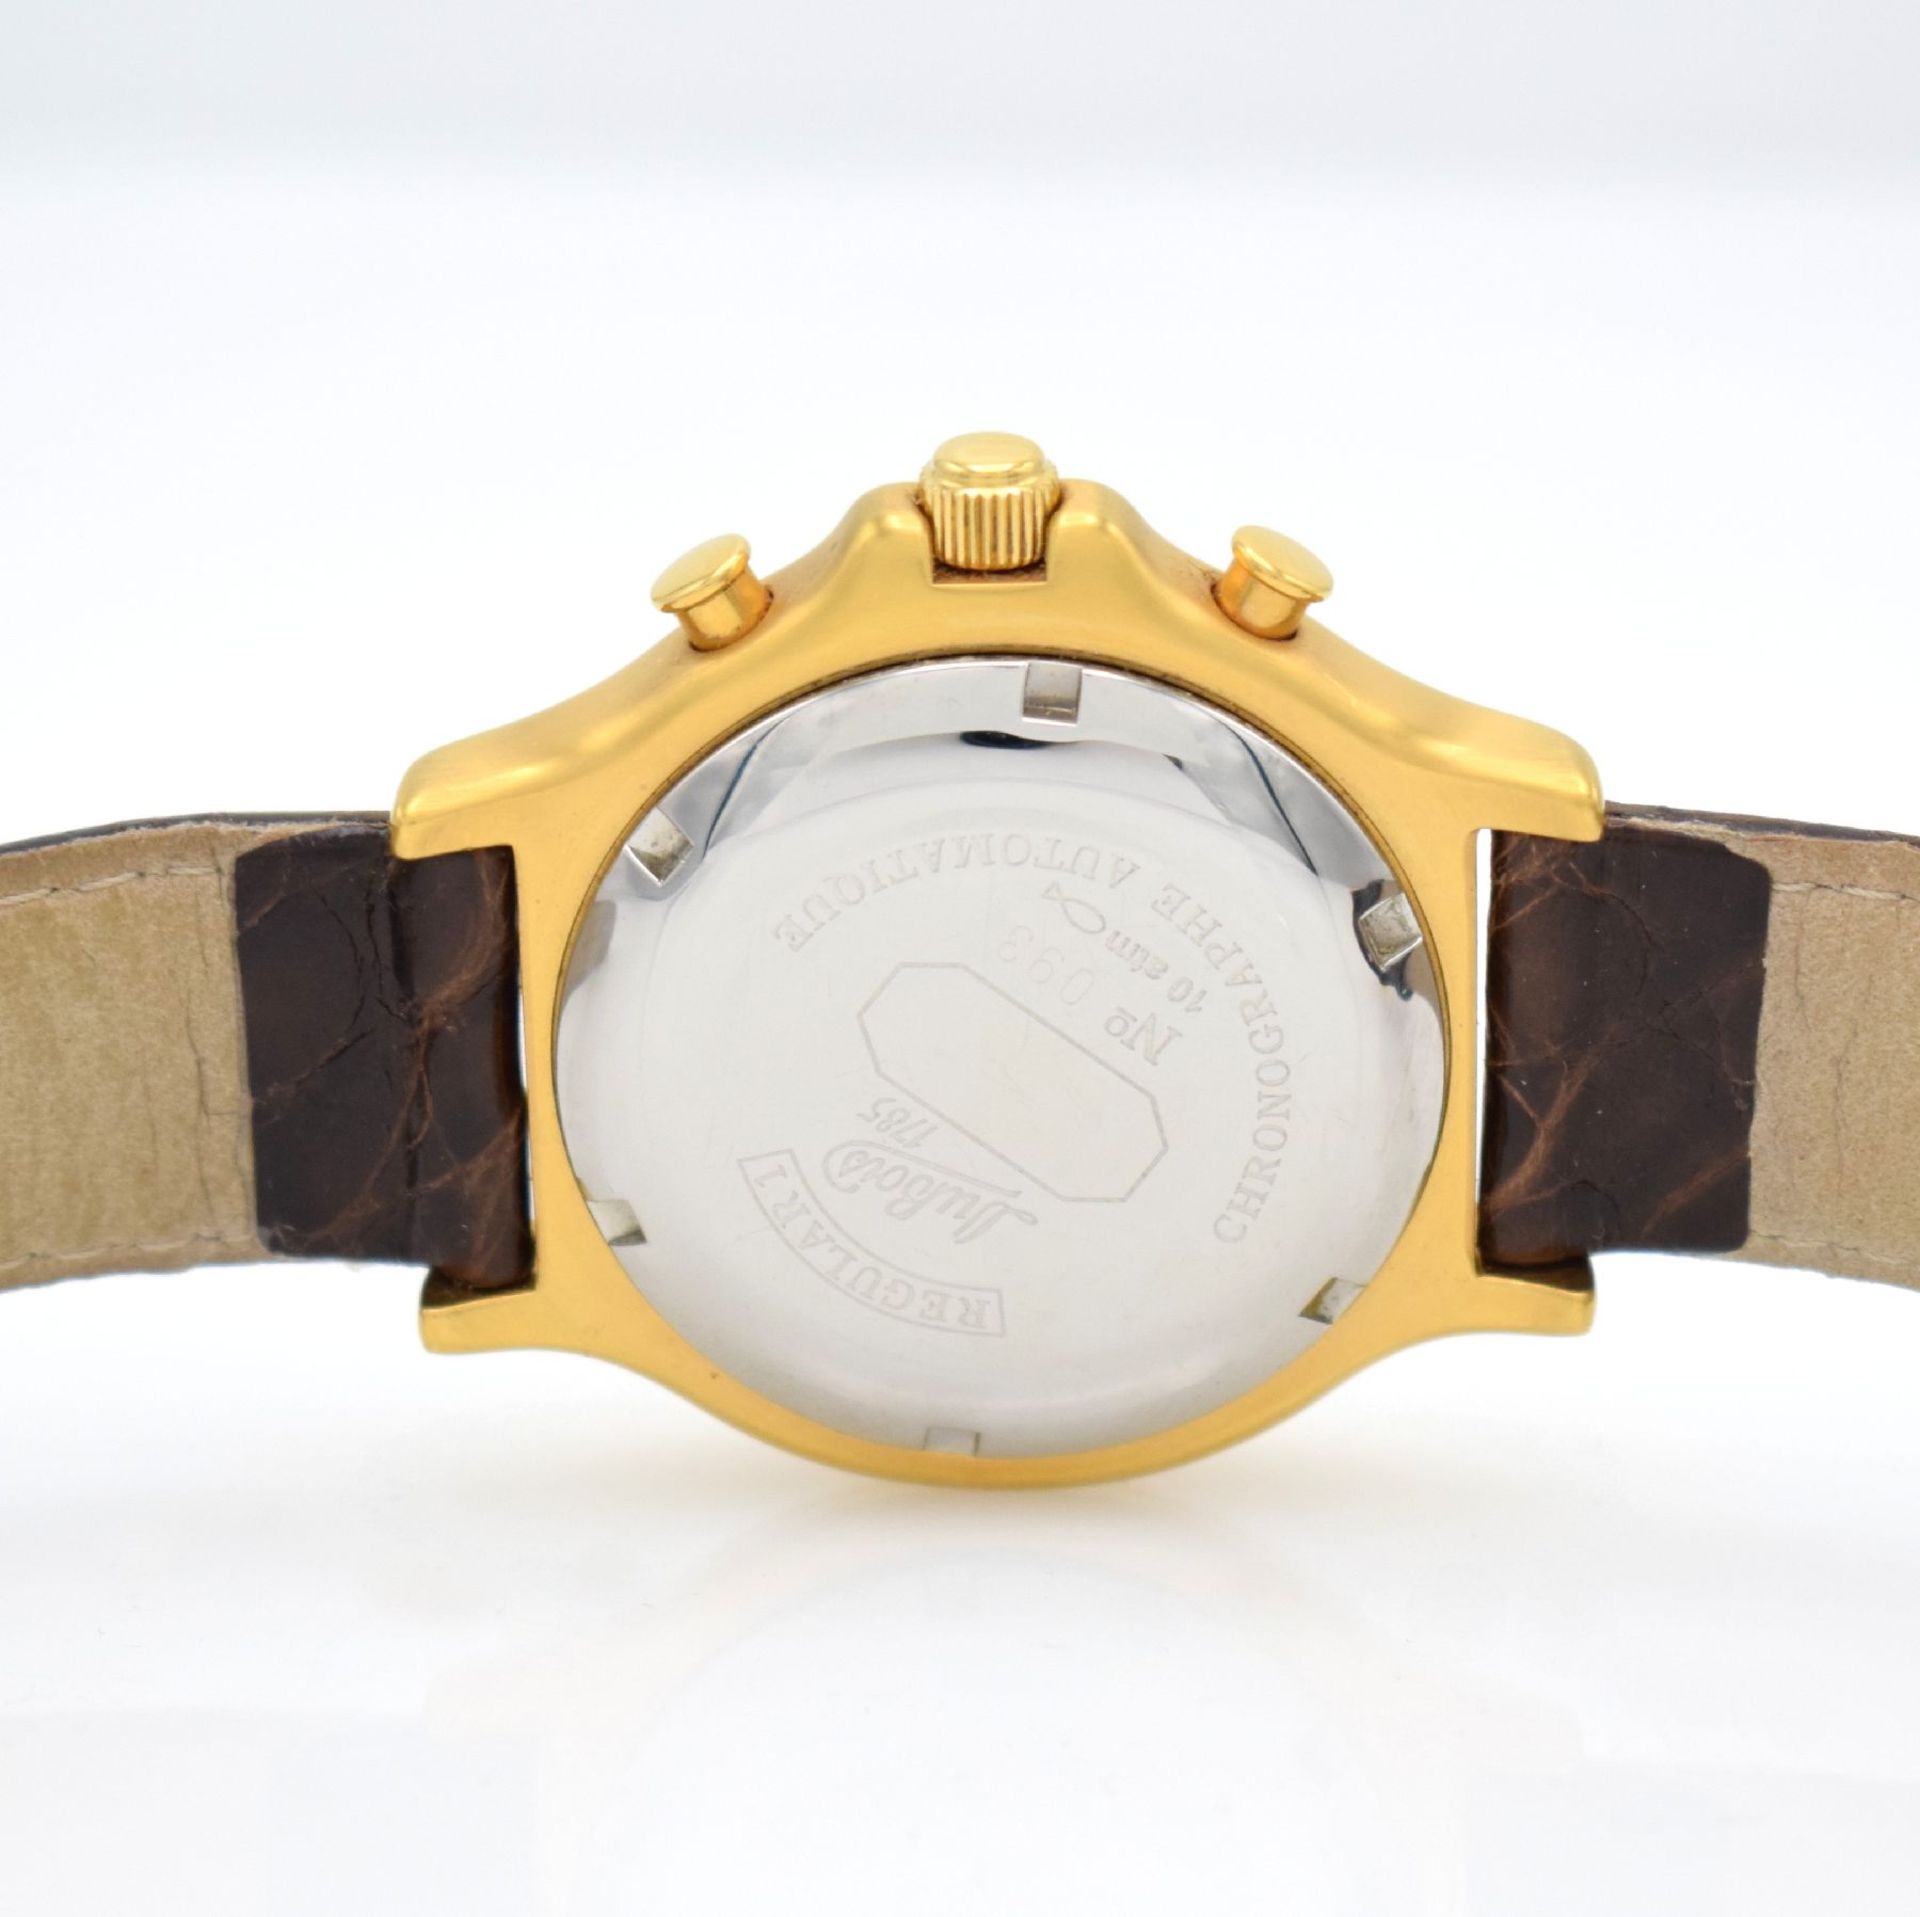 DU BOIS Regular 1 gents chronograph, Switzerland around 2000, self winding, gold plated case, - Bild 5 aus 7